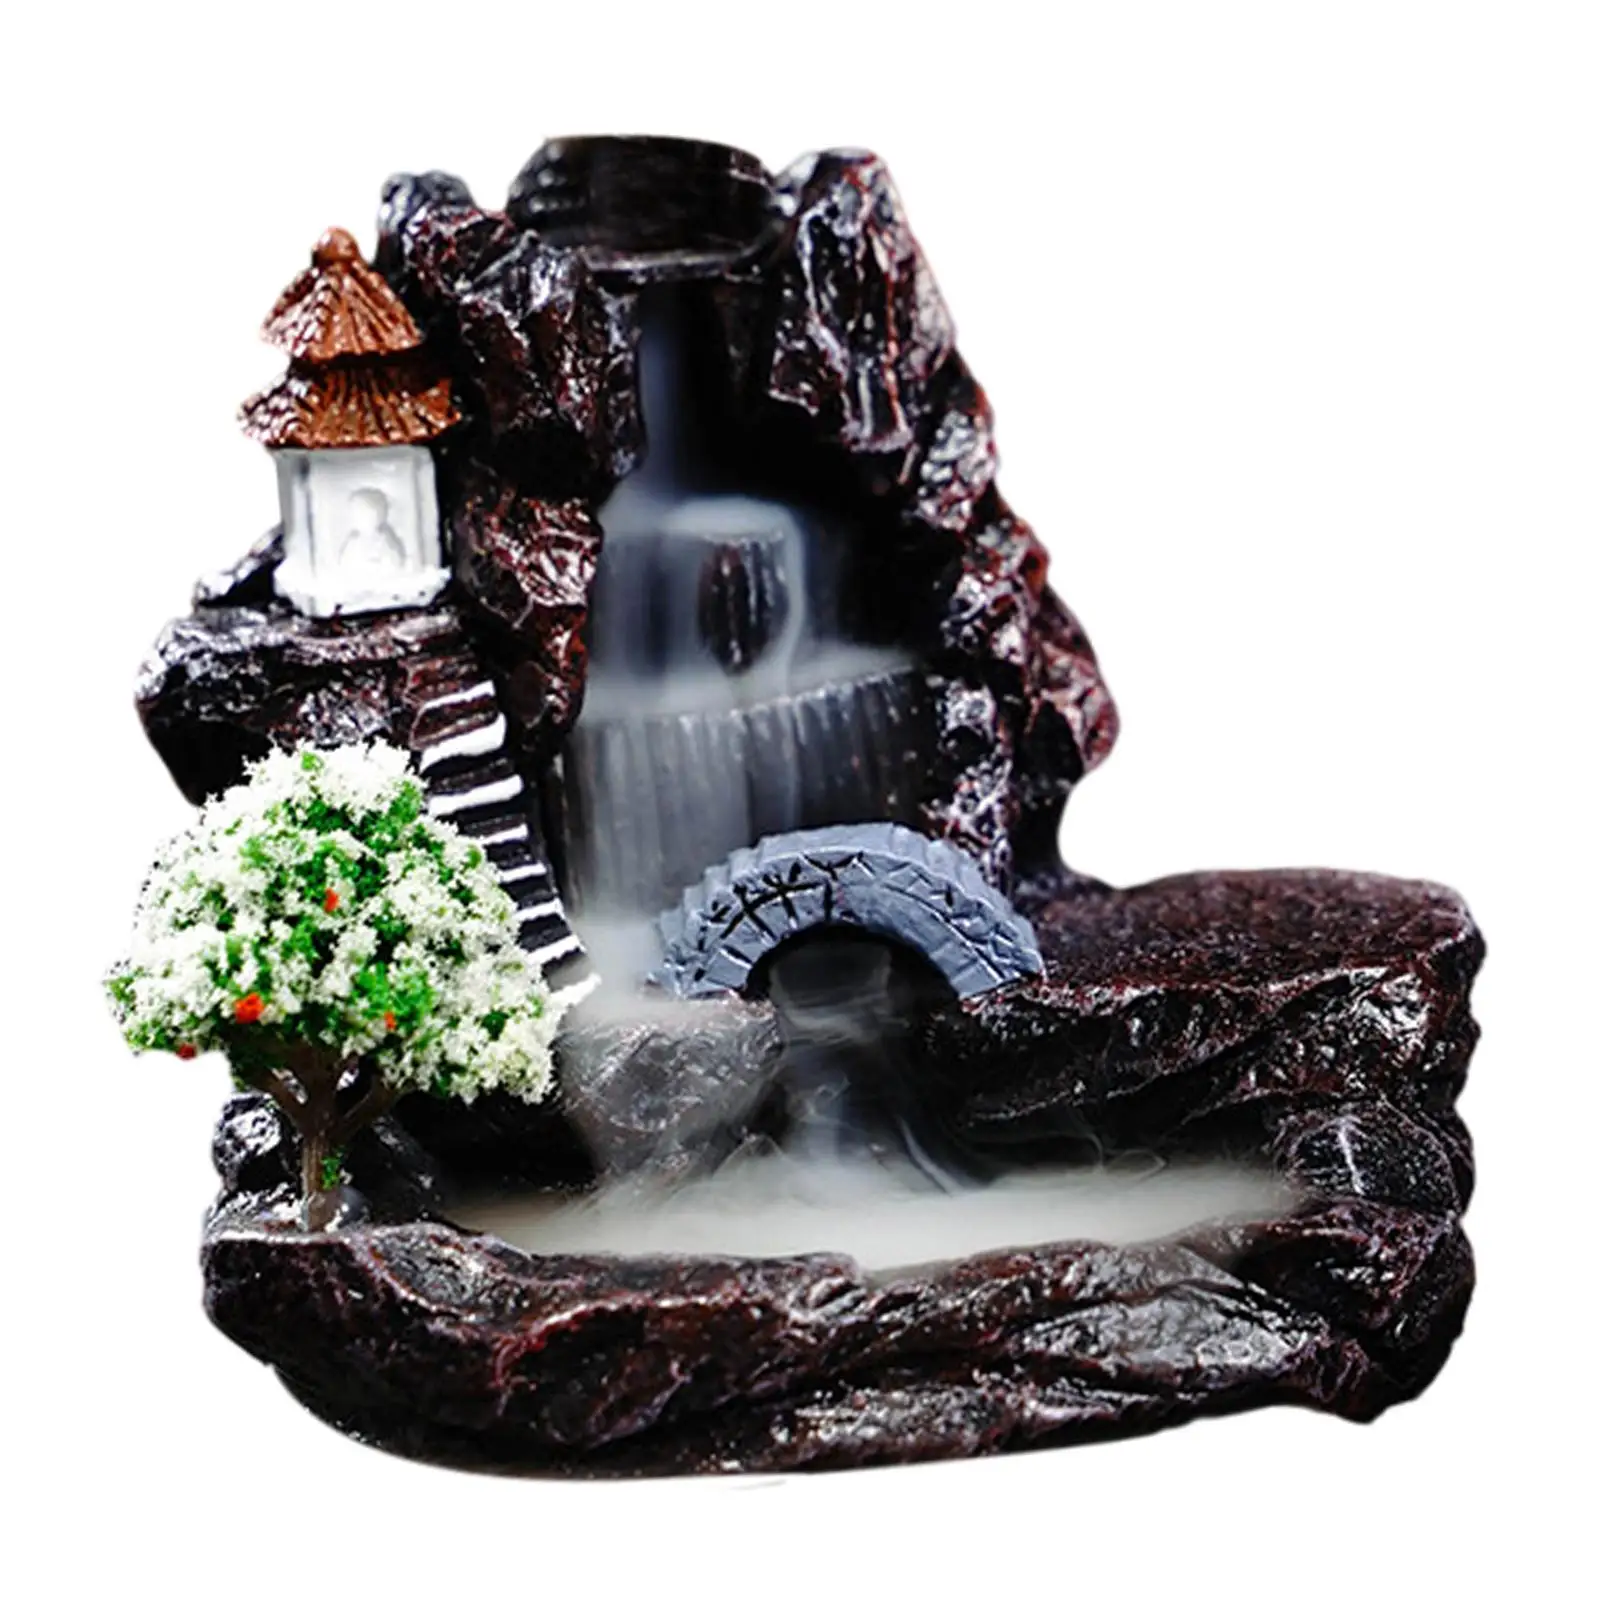 Waterfall Incense Burner Incense Censer Statue Censer Incense Cone Holder for Bedroom Table Living Room Yoga Decoration